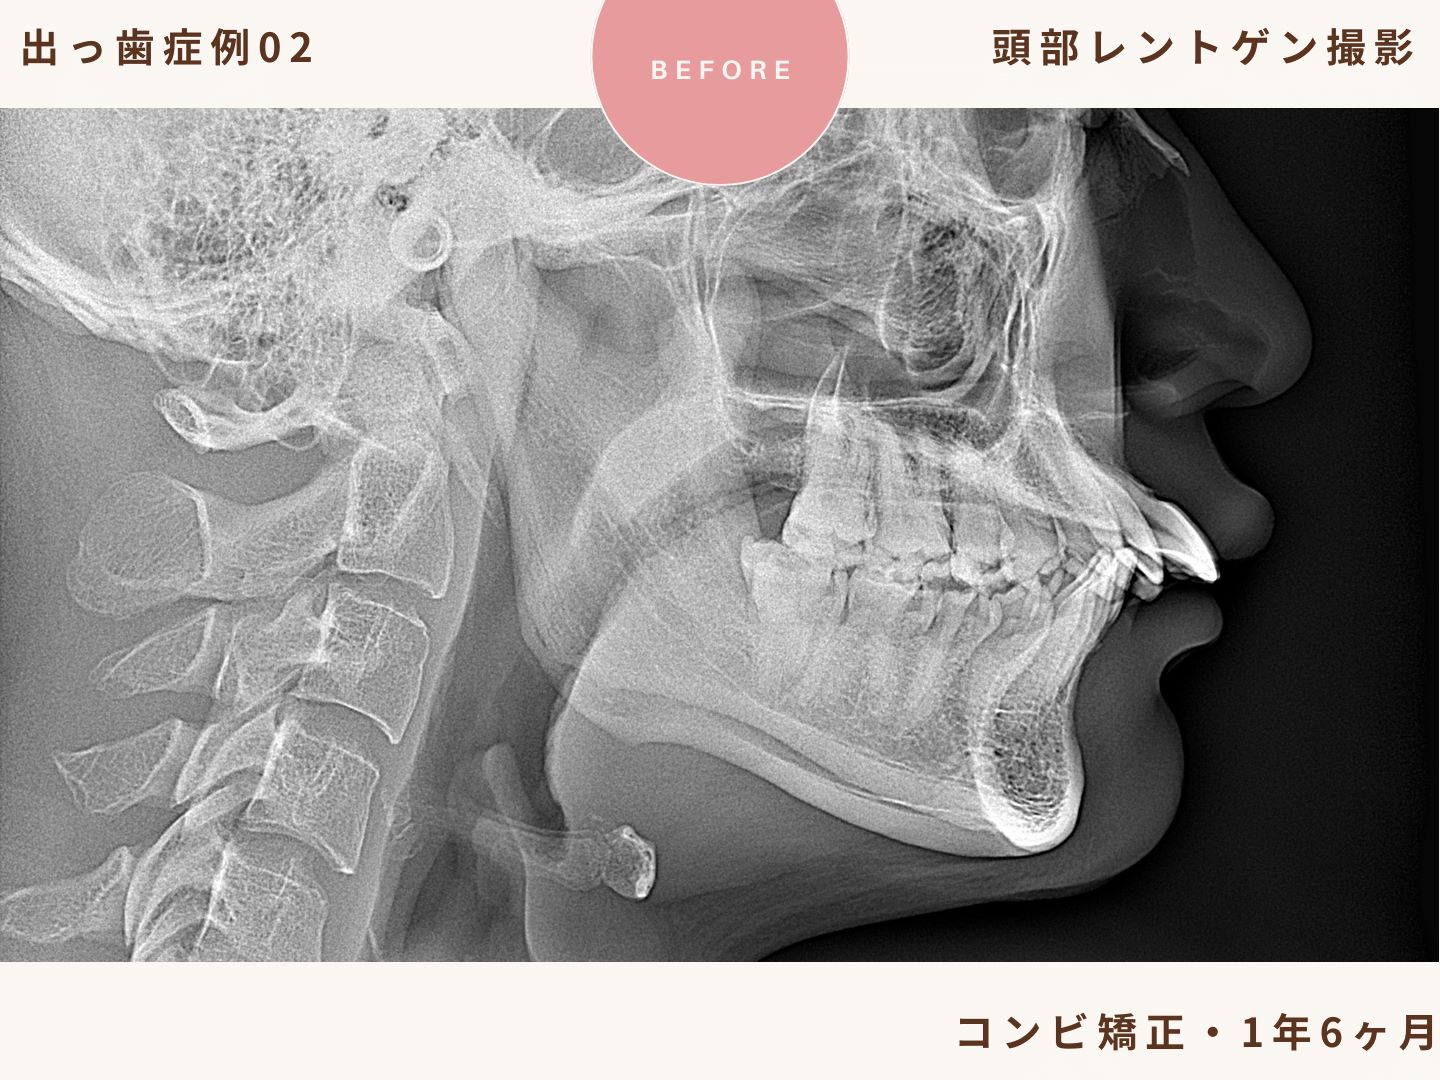 出っ歯矯正症例2、頭部レントゲン撮影